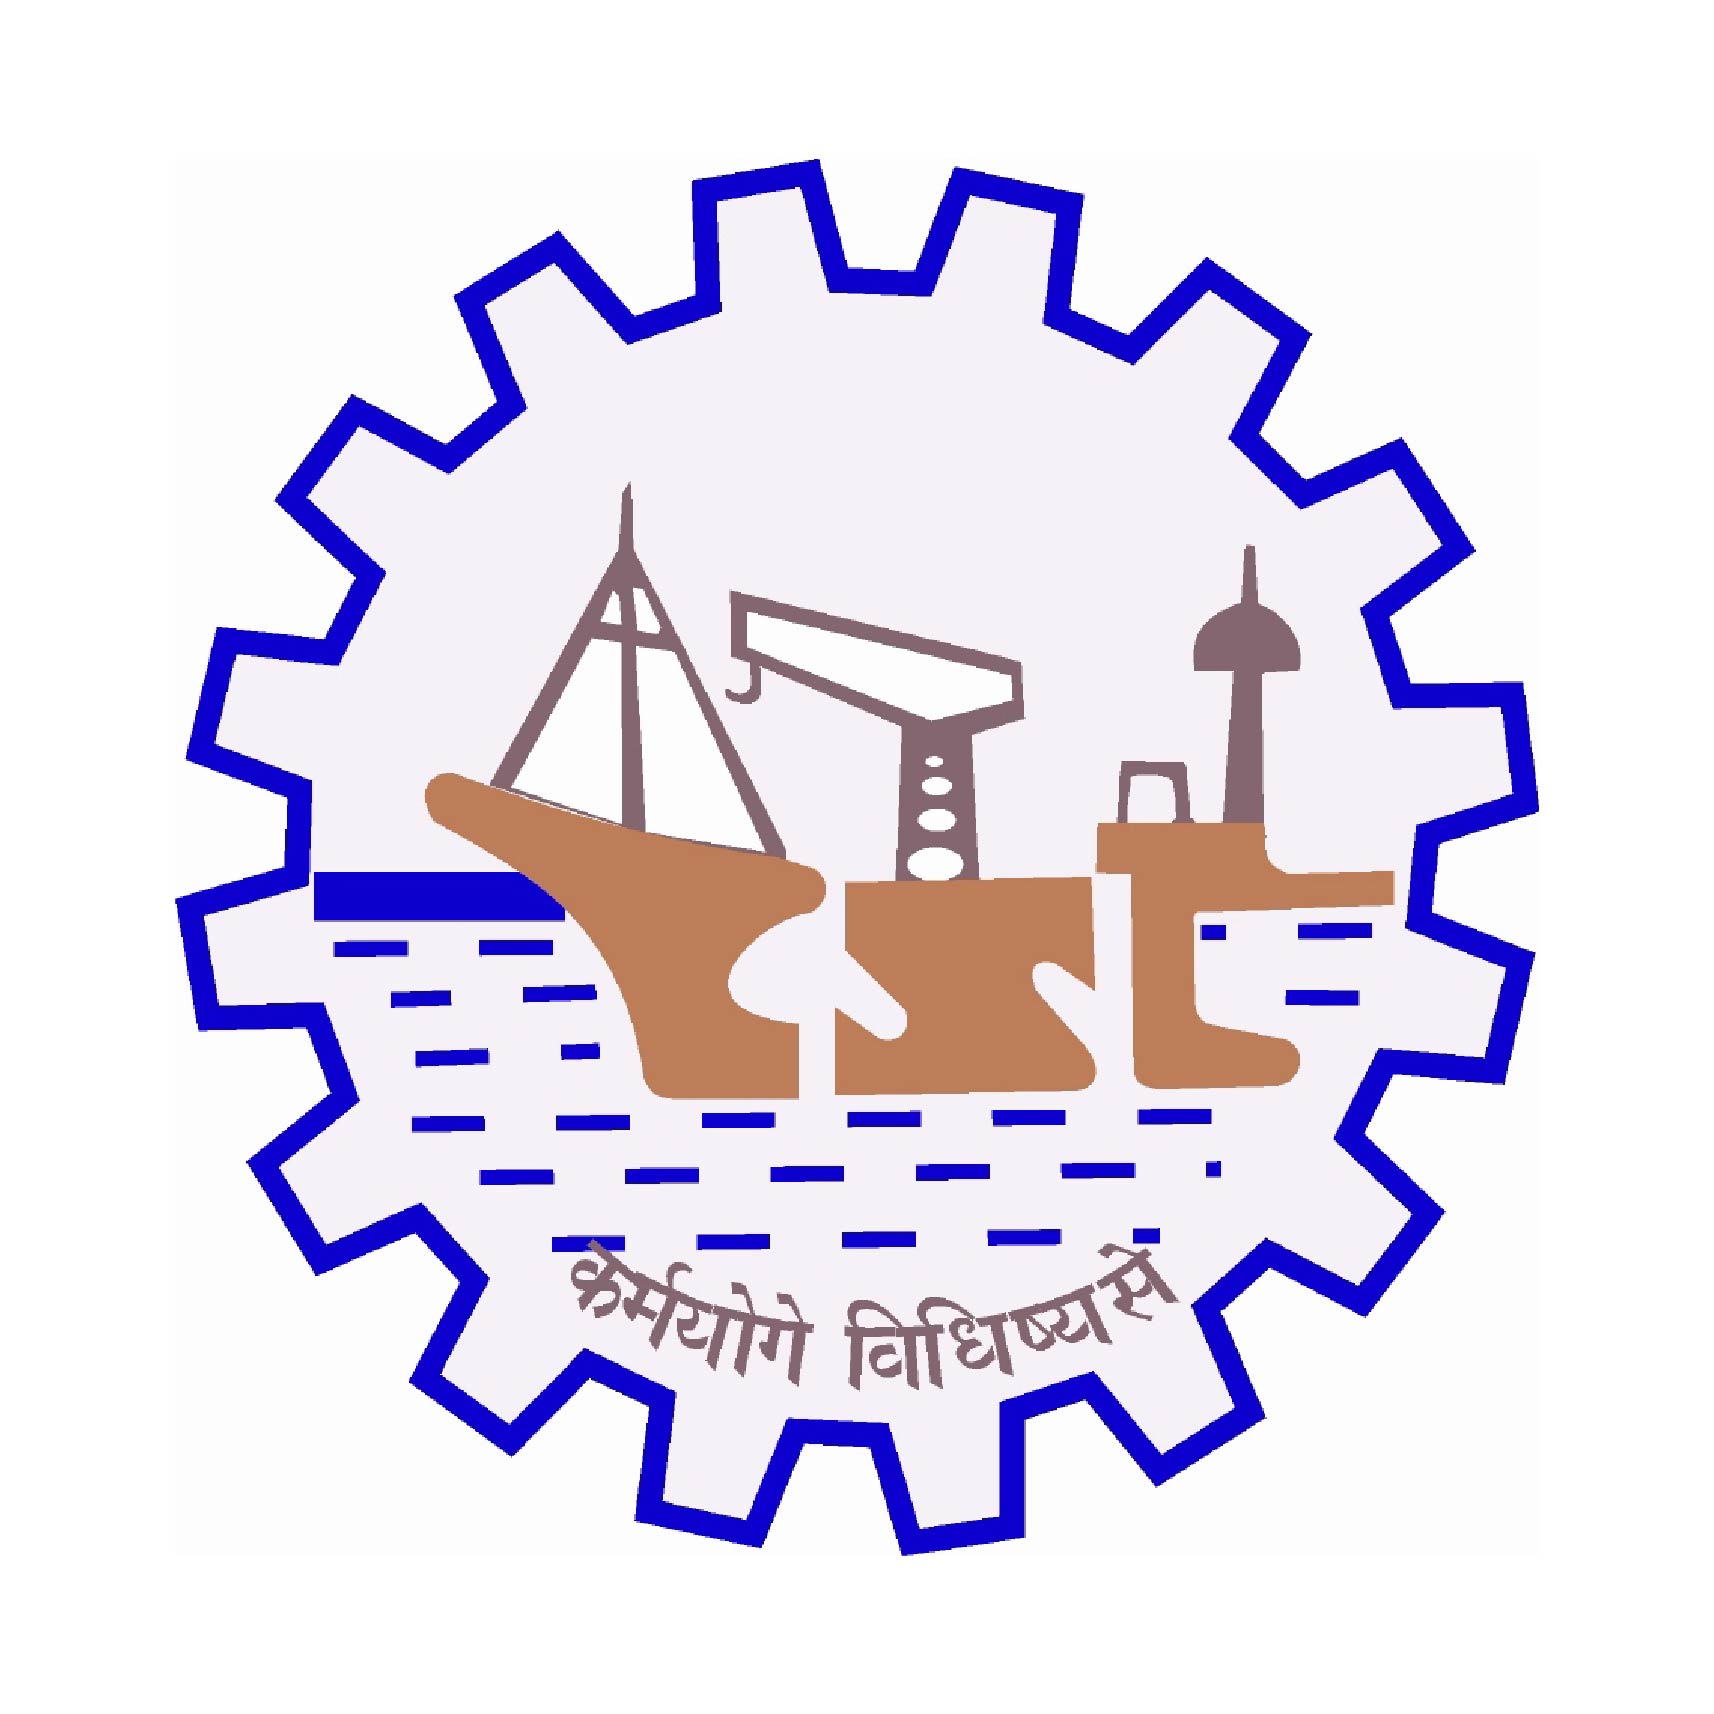  Cochin Shipyard Ltd